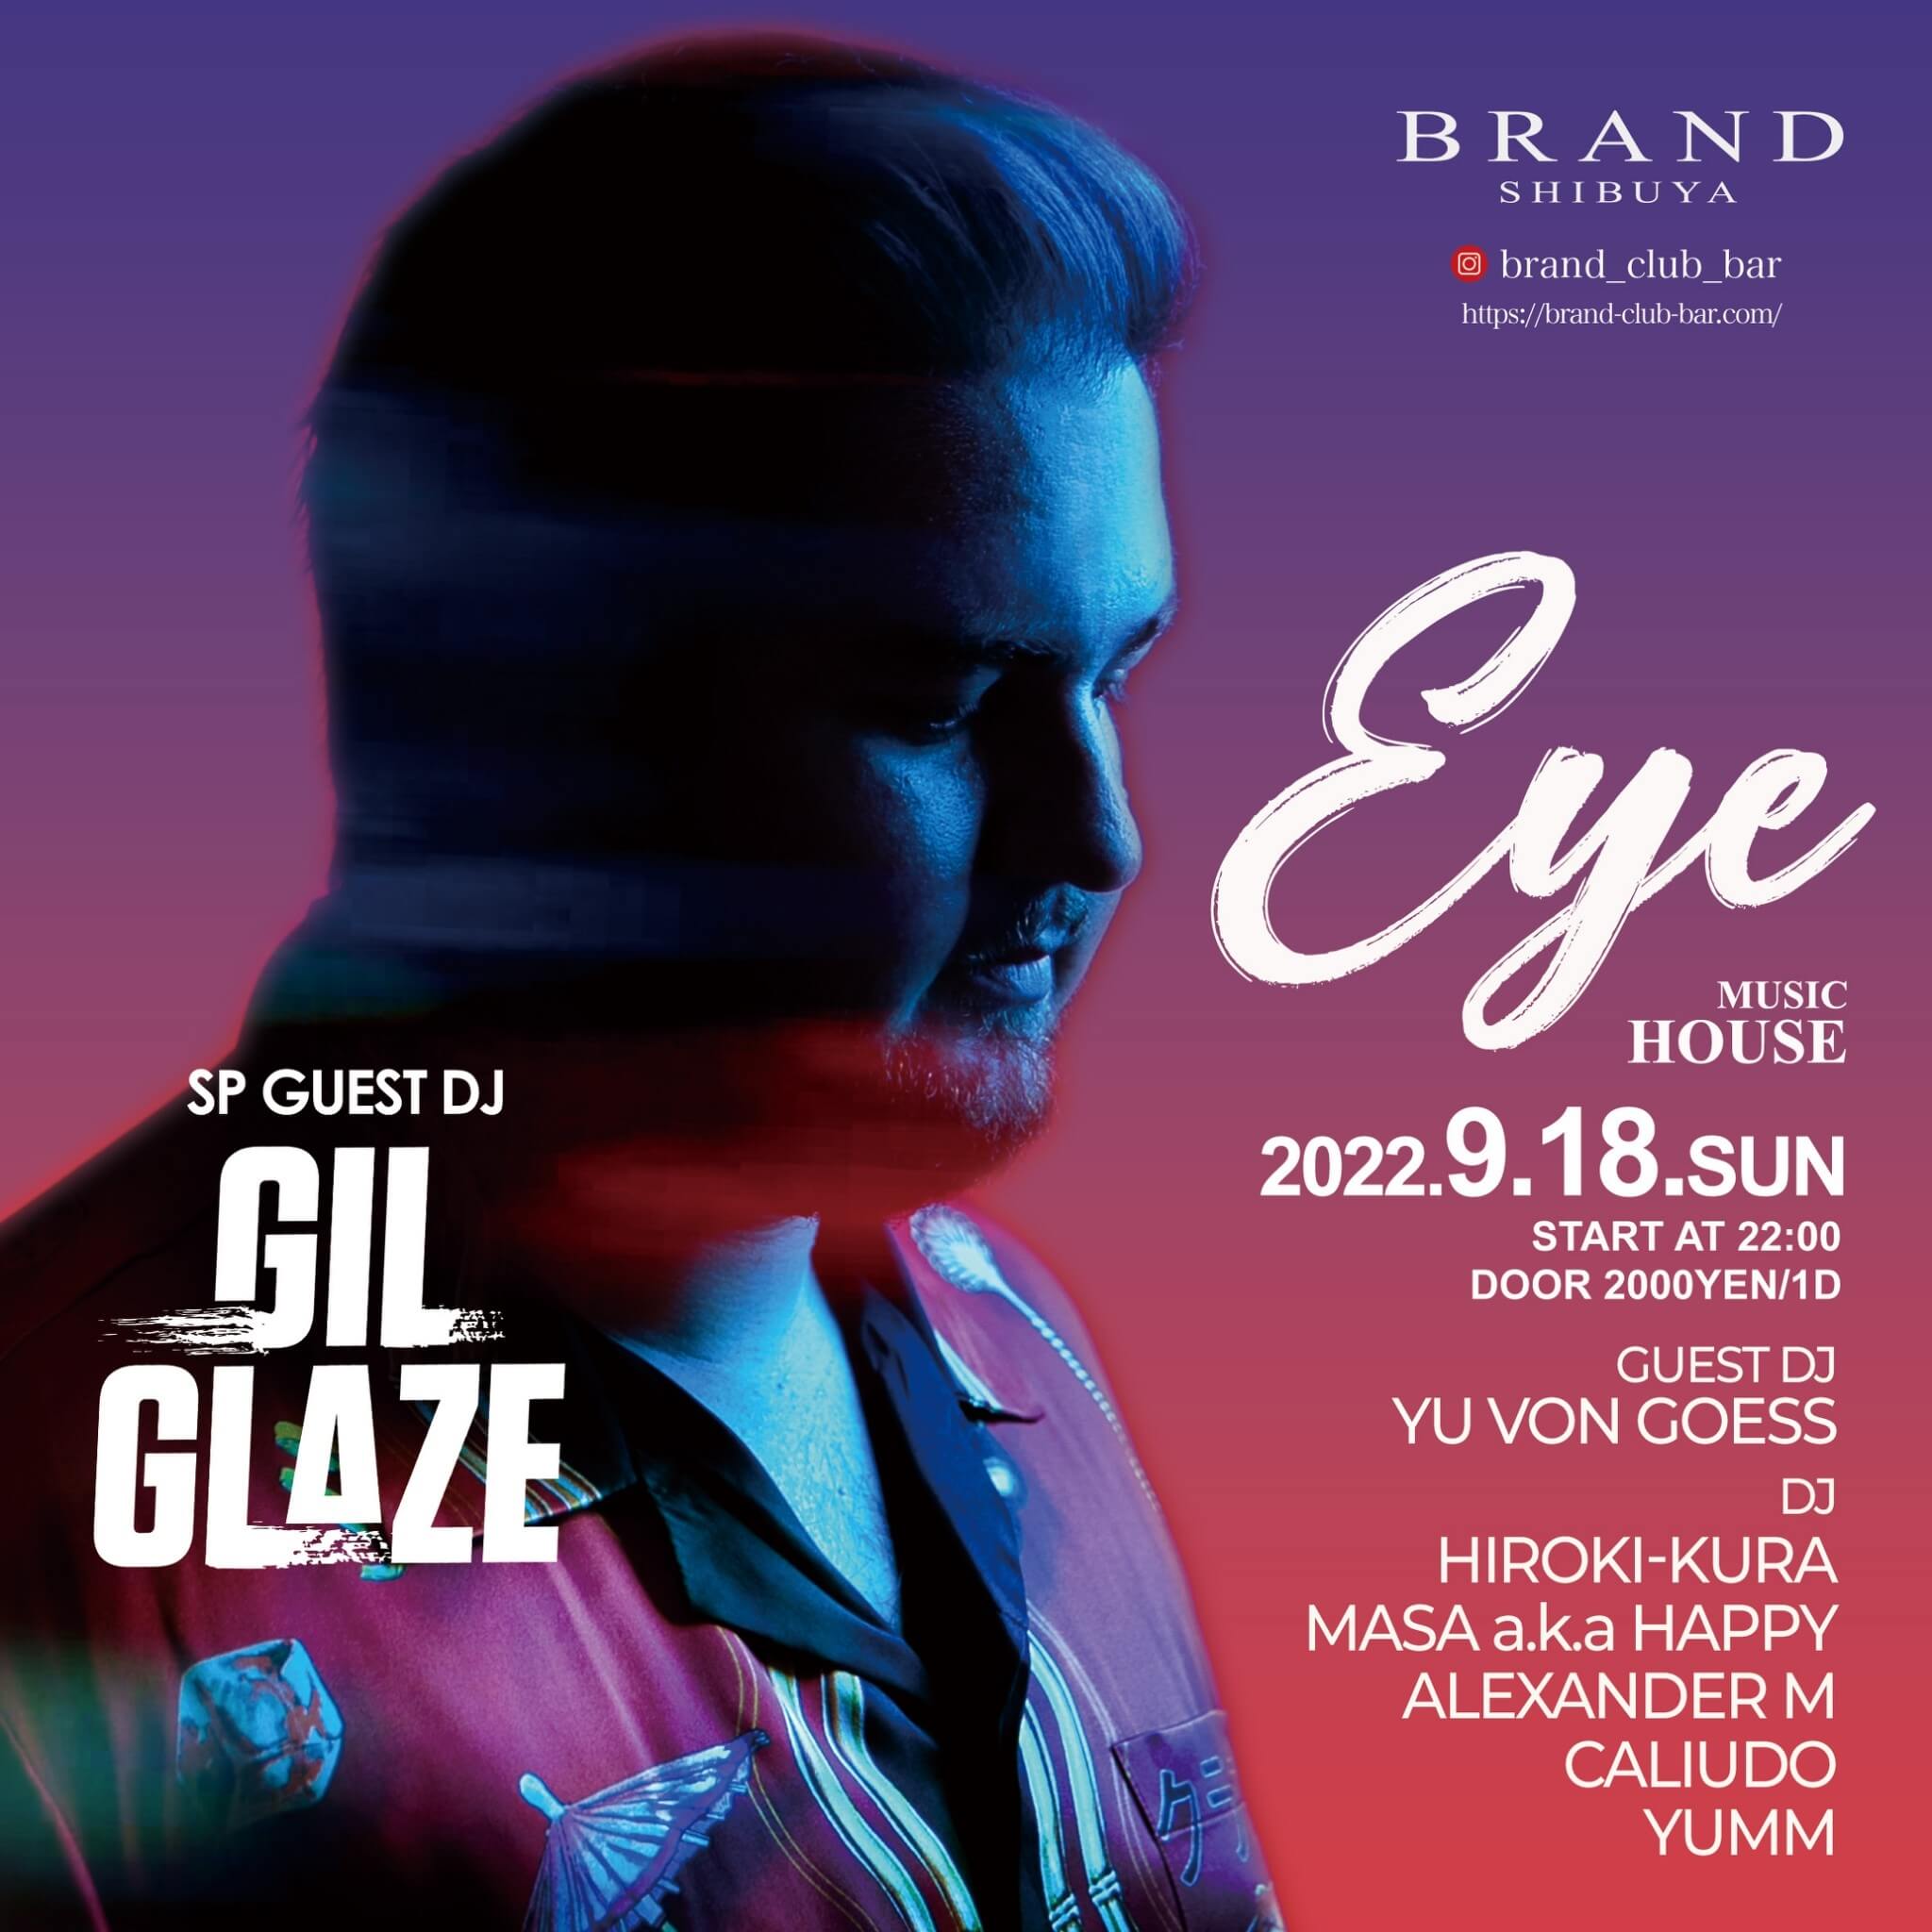 【EYE】 -SP GUEST DJ-  GIL GLAZE
 2022年09月18日（日曜日）に渋谷 クラブのBRAND SHIBUYAで開催されるイベント